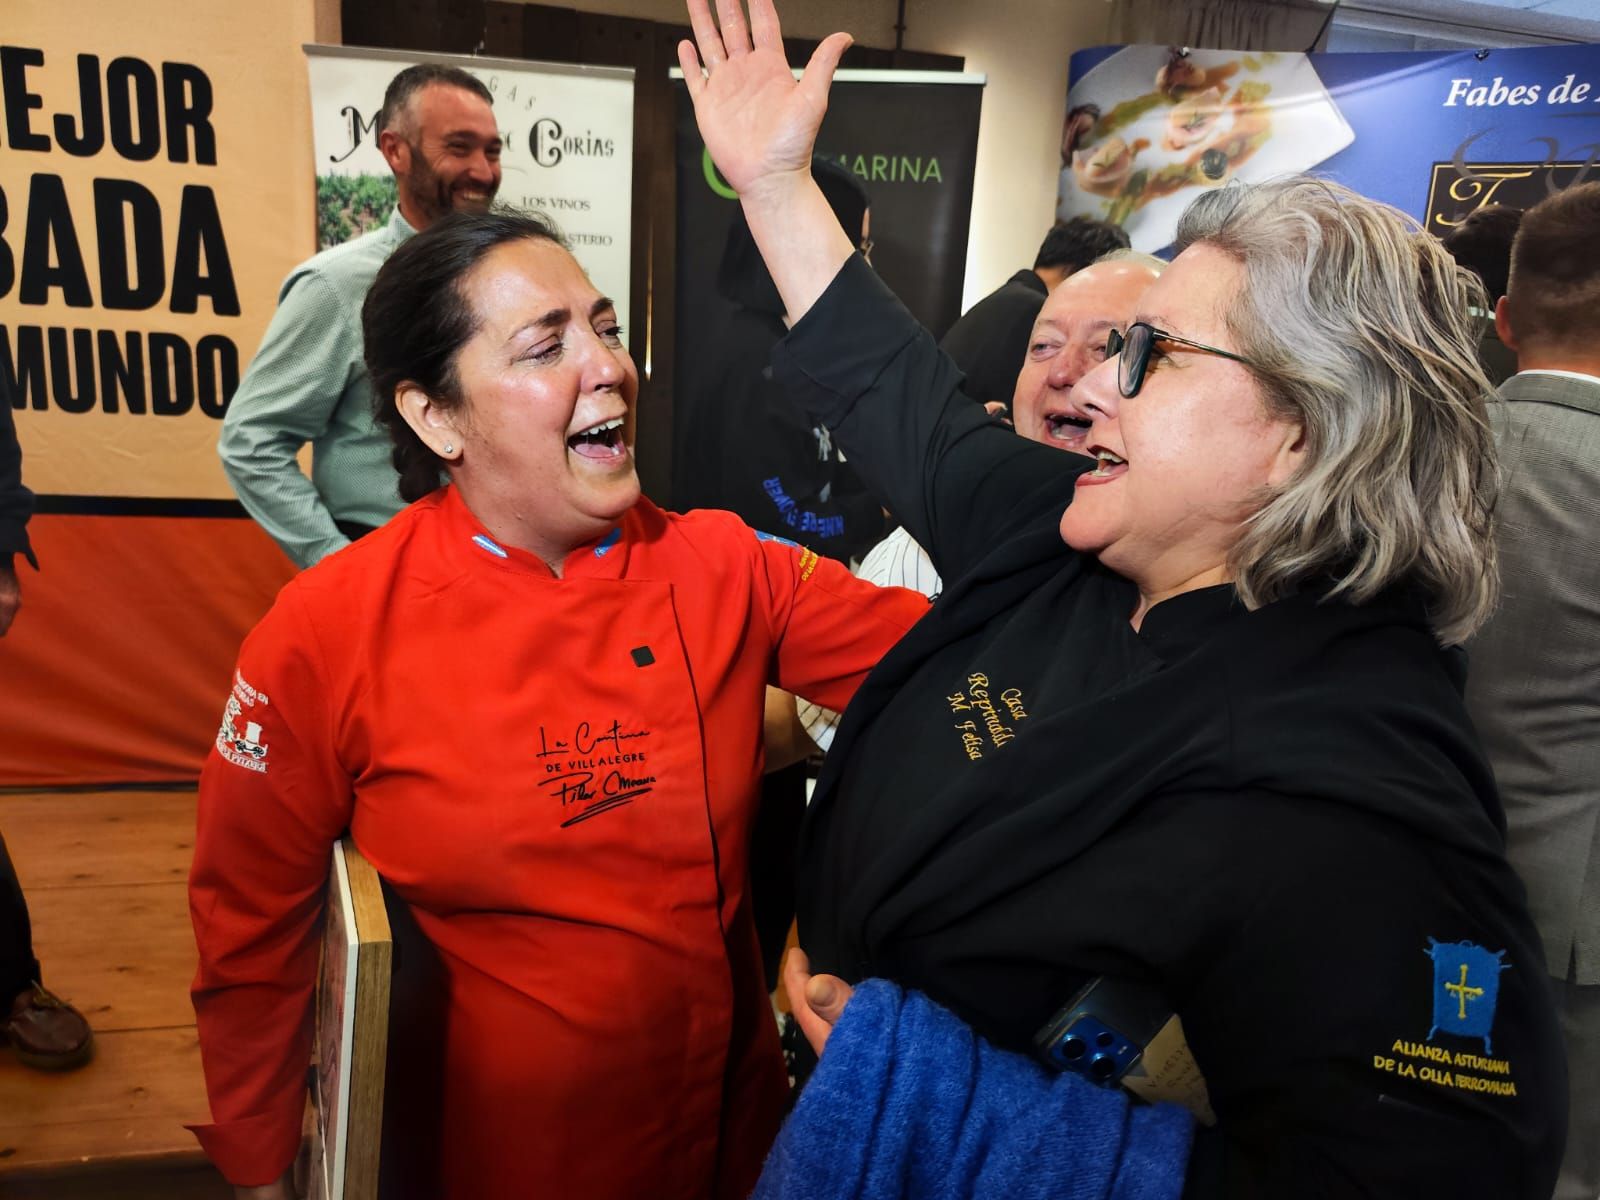 La Cantina de Villalegre cocina la "Mejor Fabada del Mundo": así fue el concurso gastronómico